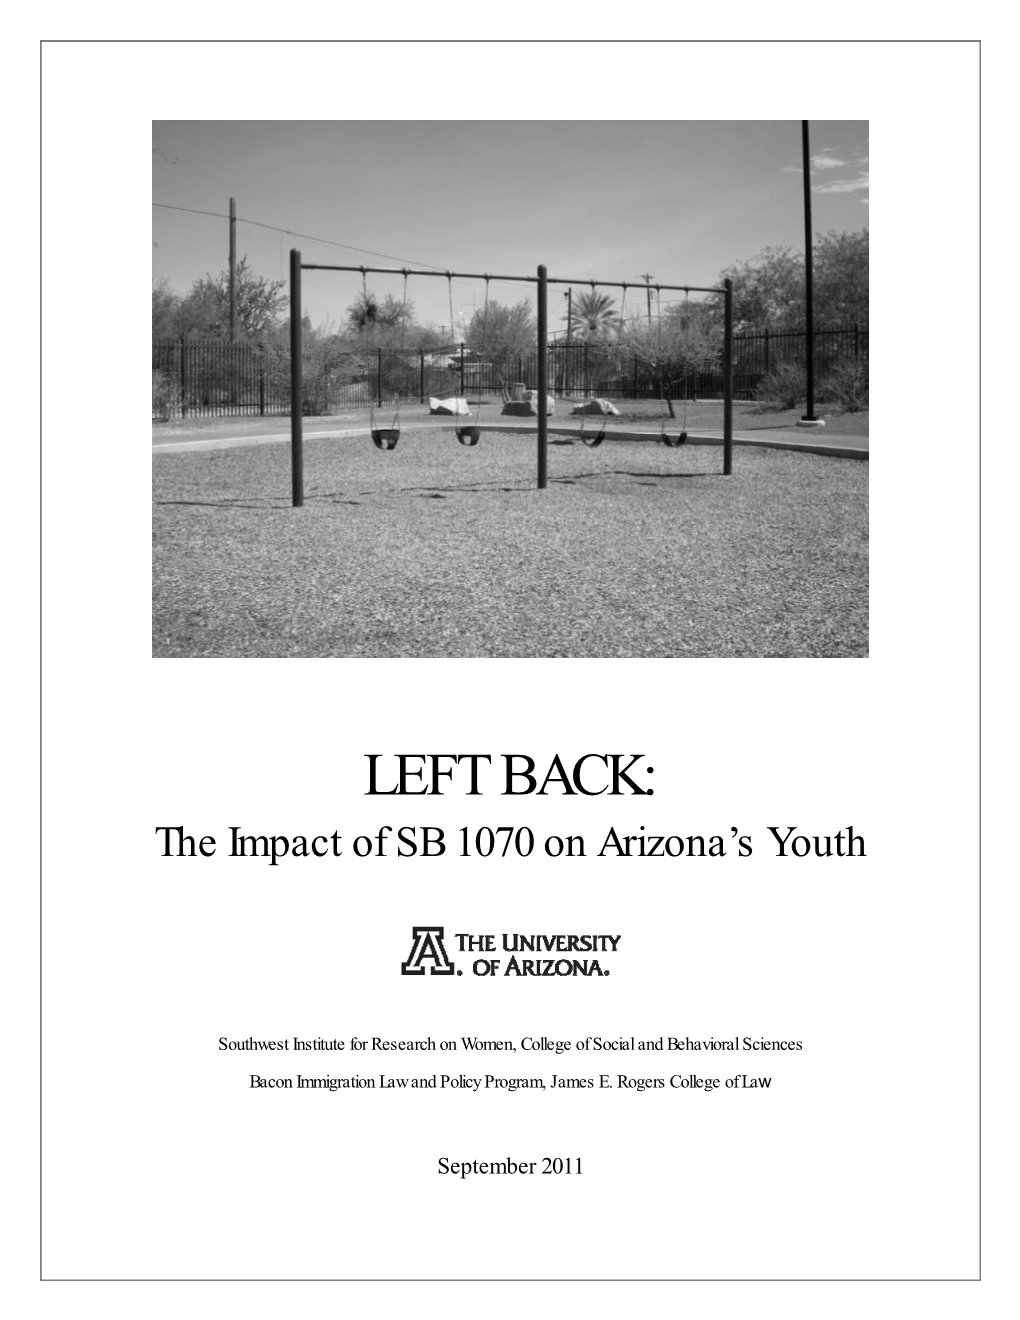 Left Back: the Impact of SB 1070 on Arizona's Youth